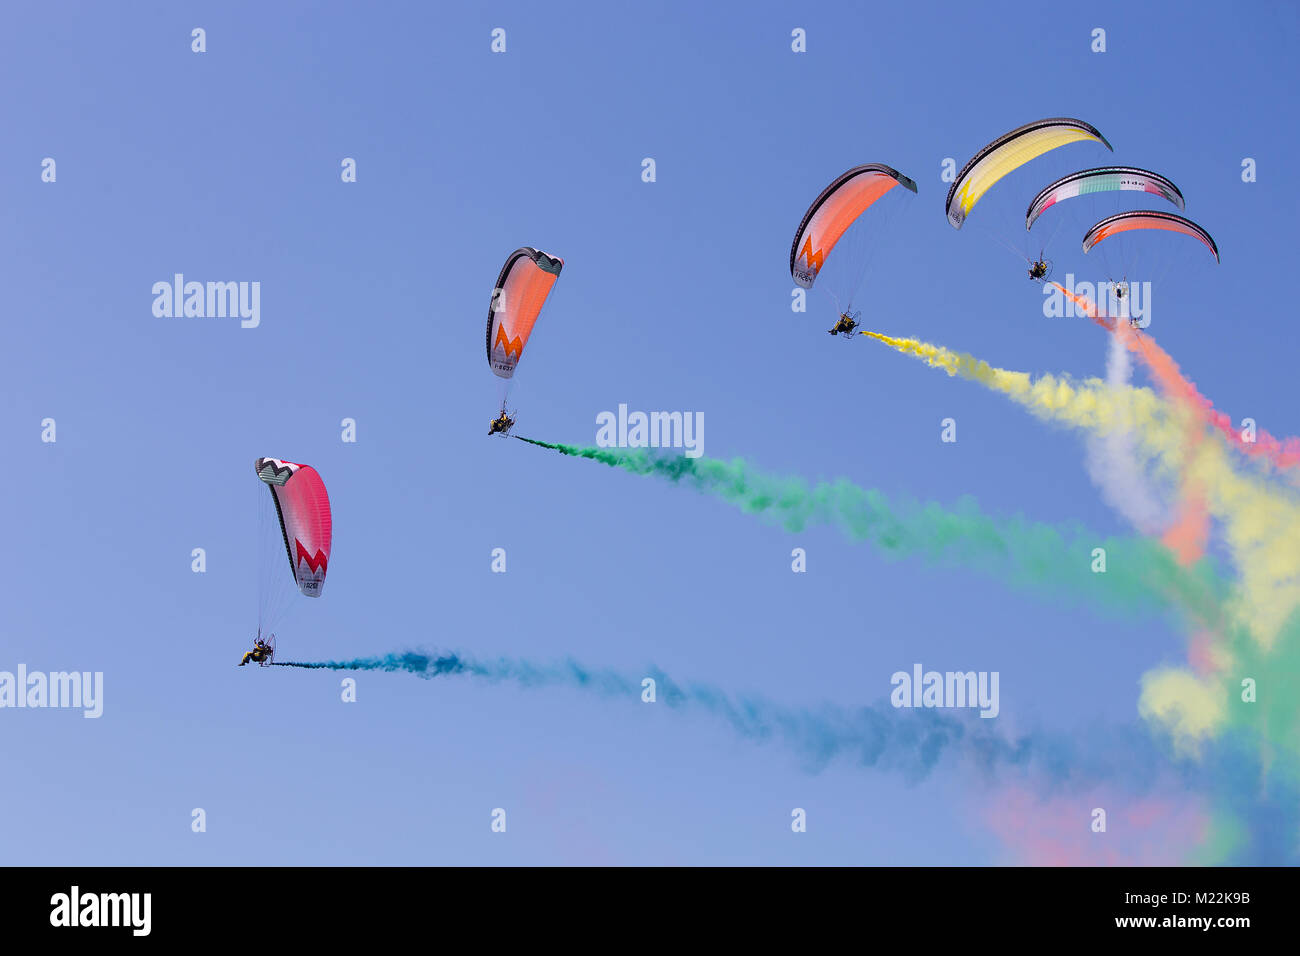 Per le esposizioni Airshow di variopinte powered paracadute. Paracadutisti durante le prestazioni dell'aria con il sentiero della bandiera italiana i colori nel cielo azzurro. Foto Stock